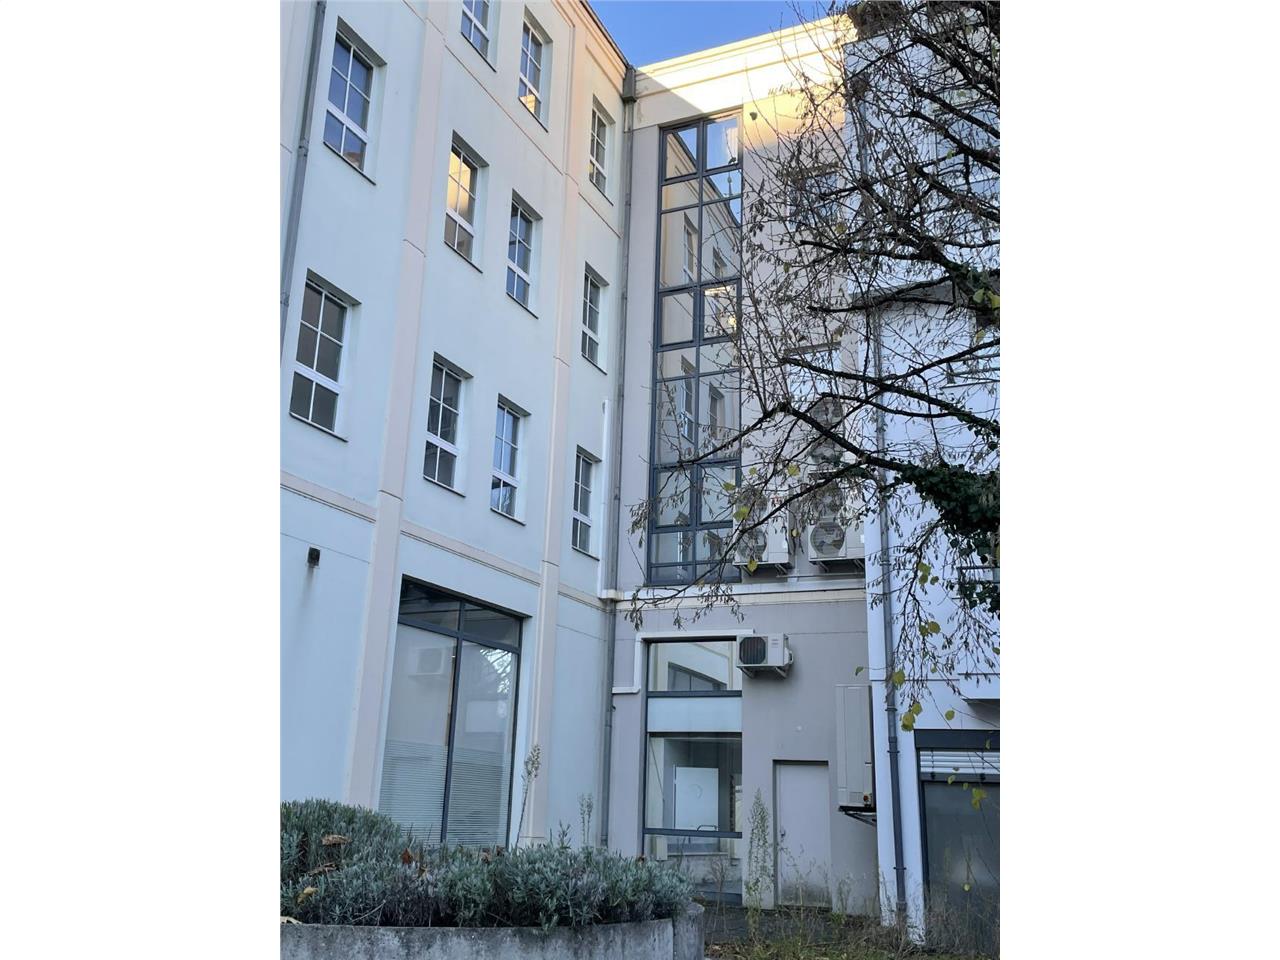 Vente bureau Montigny-lès-Metz 278m²